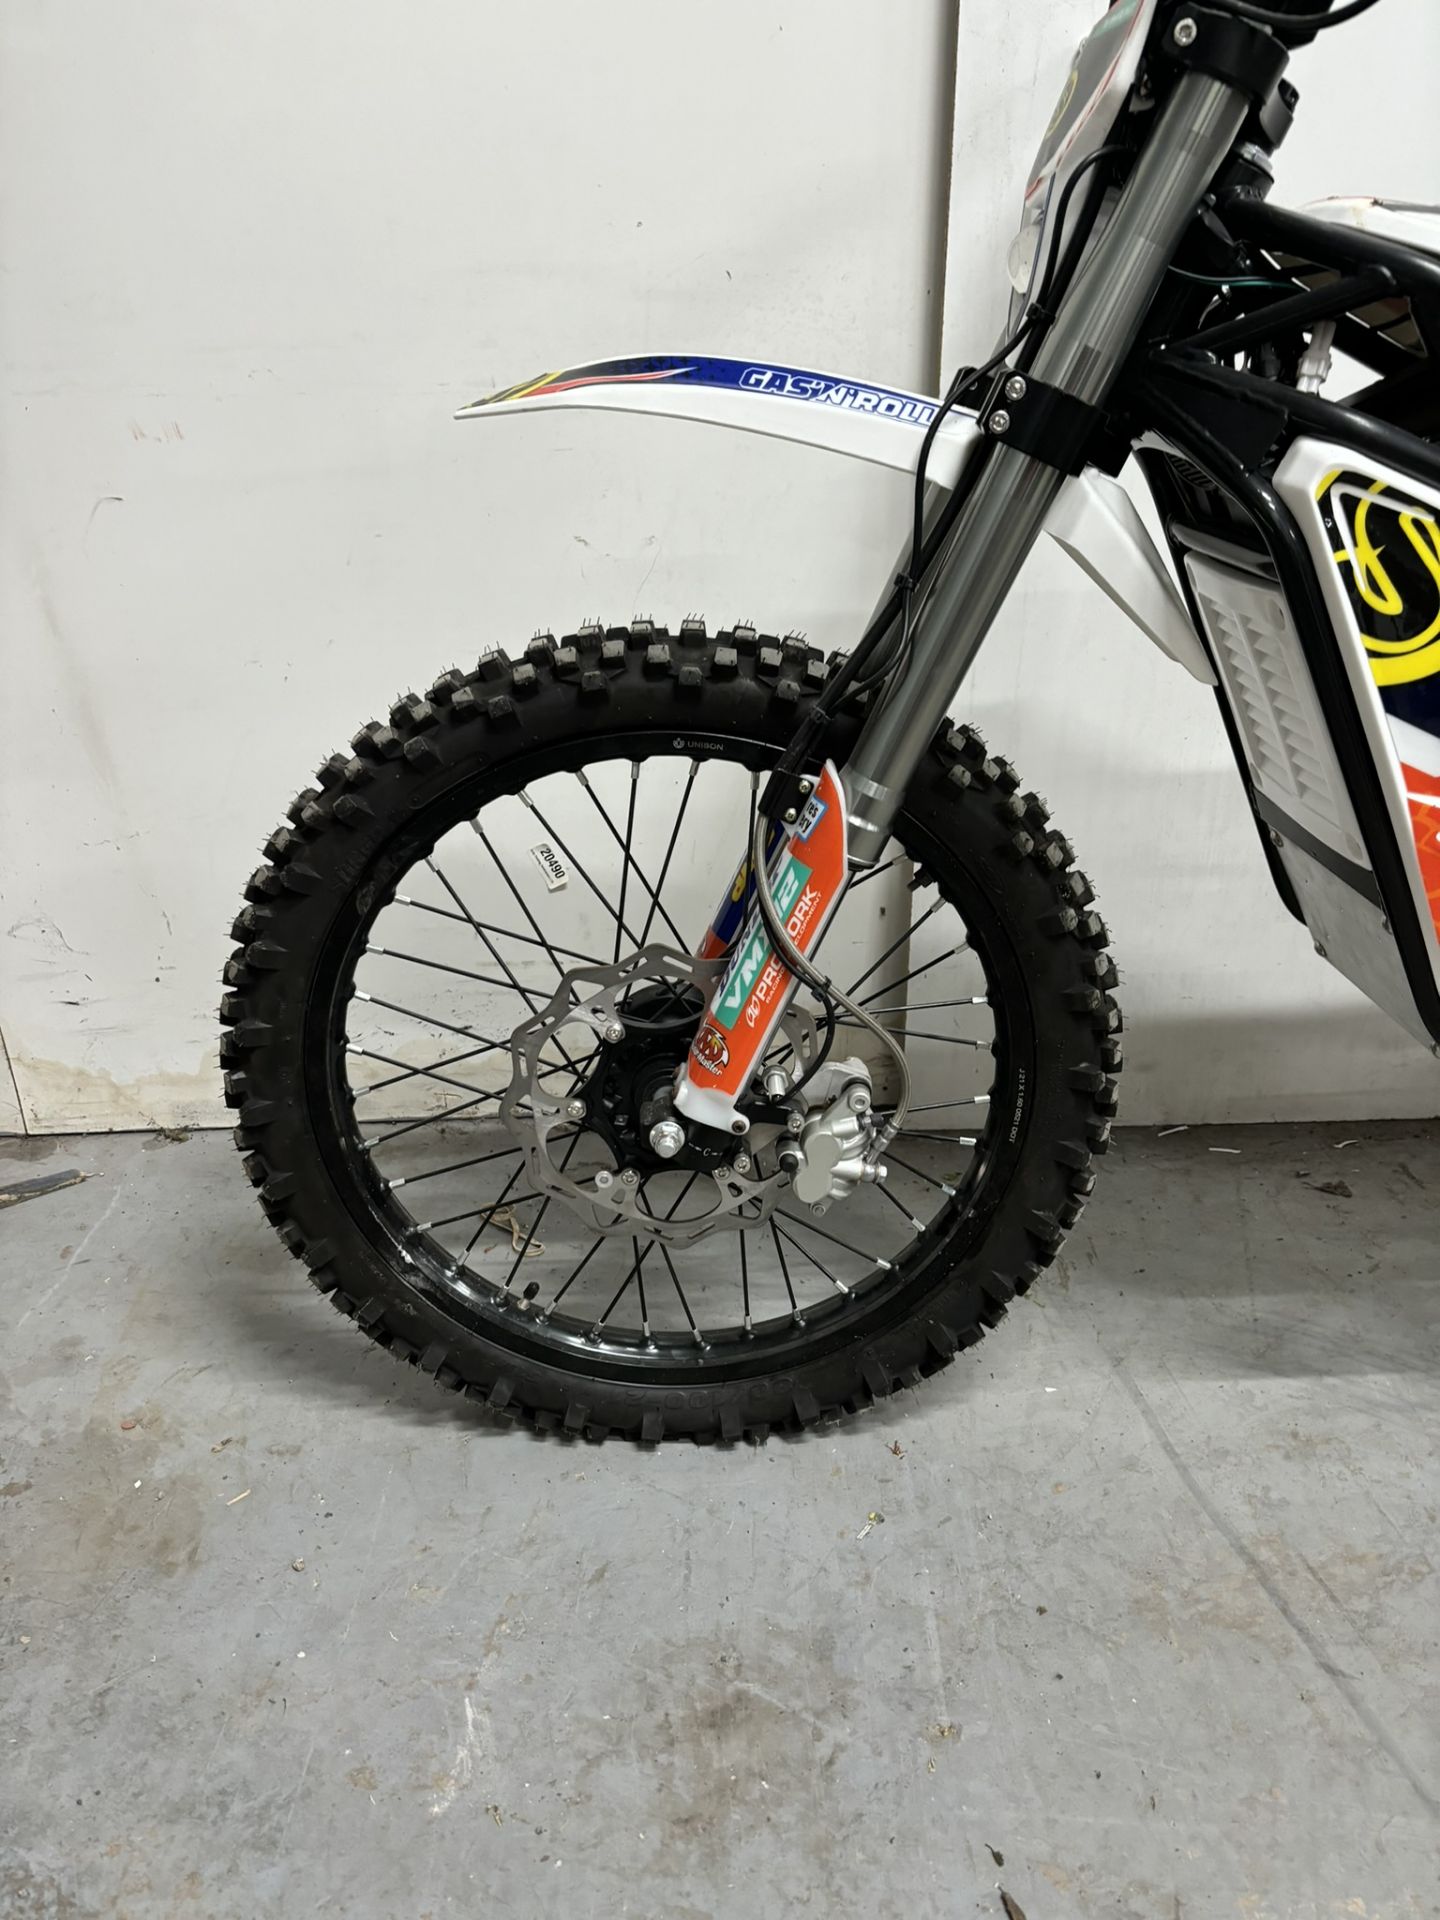 Velimotor VMX12 Electric Motorcycle / Dirt Bike - Image 5 of 24